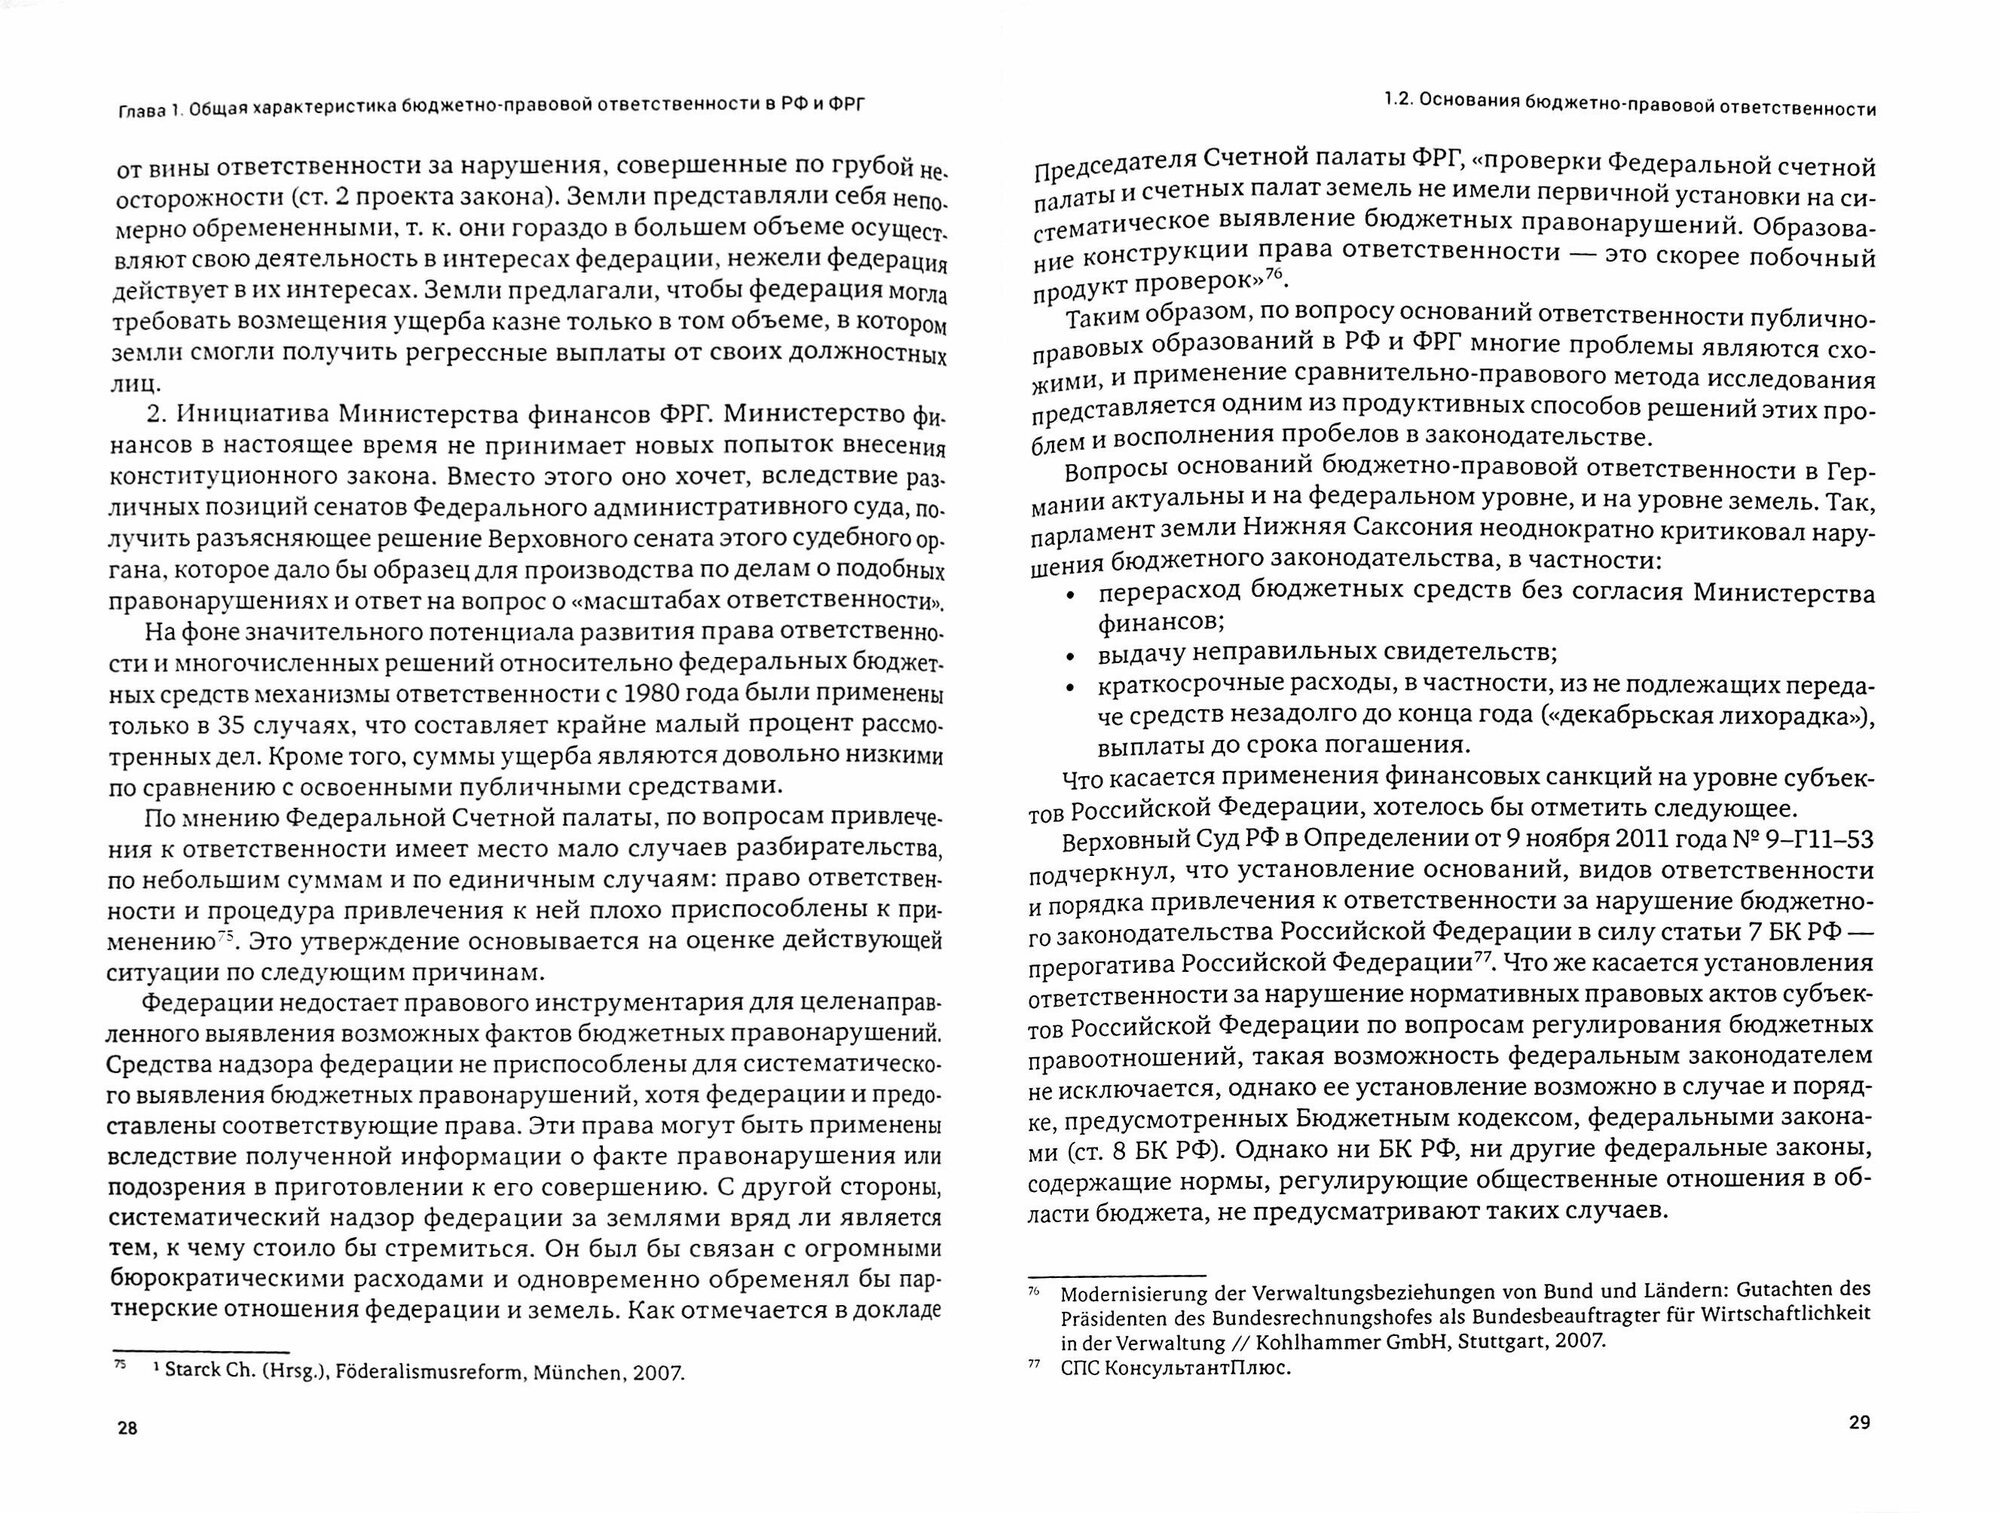 Бюджетно-правовая ответственность в РФ и ФРГ. Сравнительно-правовое исследование - фото №4